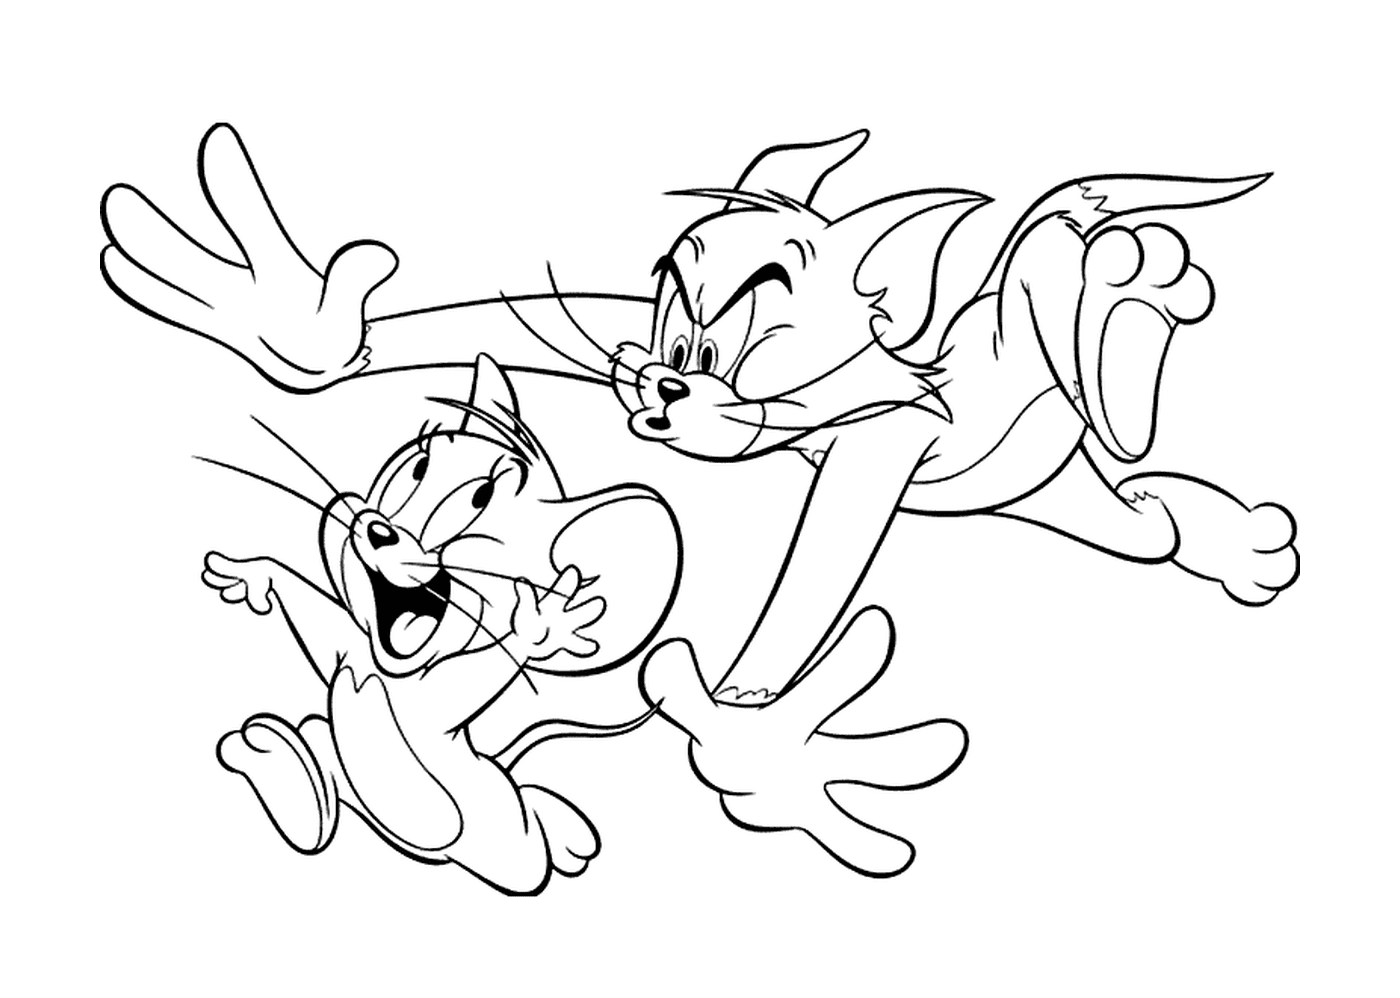  Tom corre atrás de Jerry 